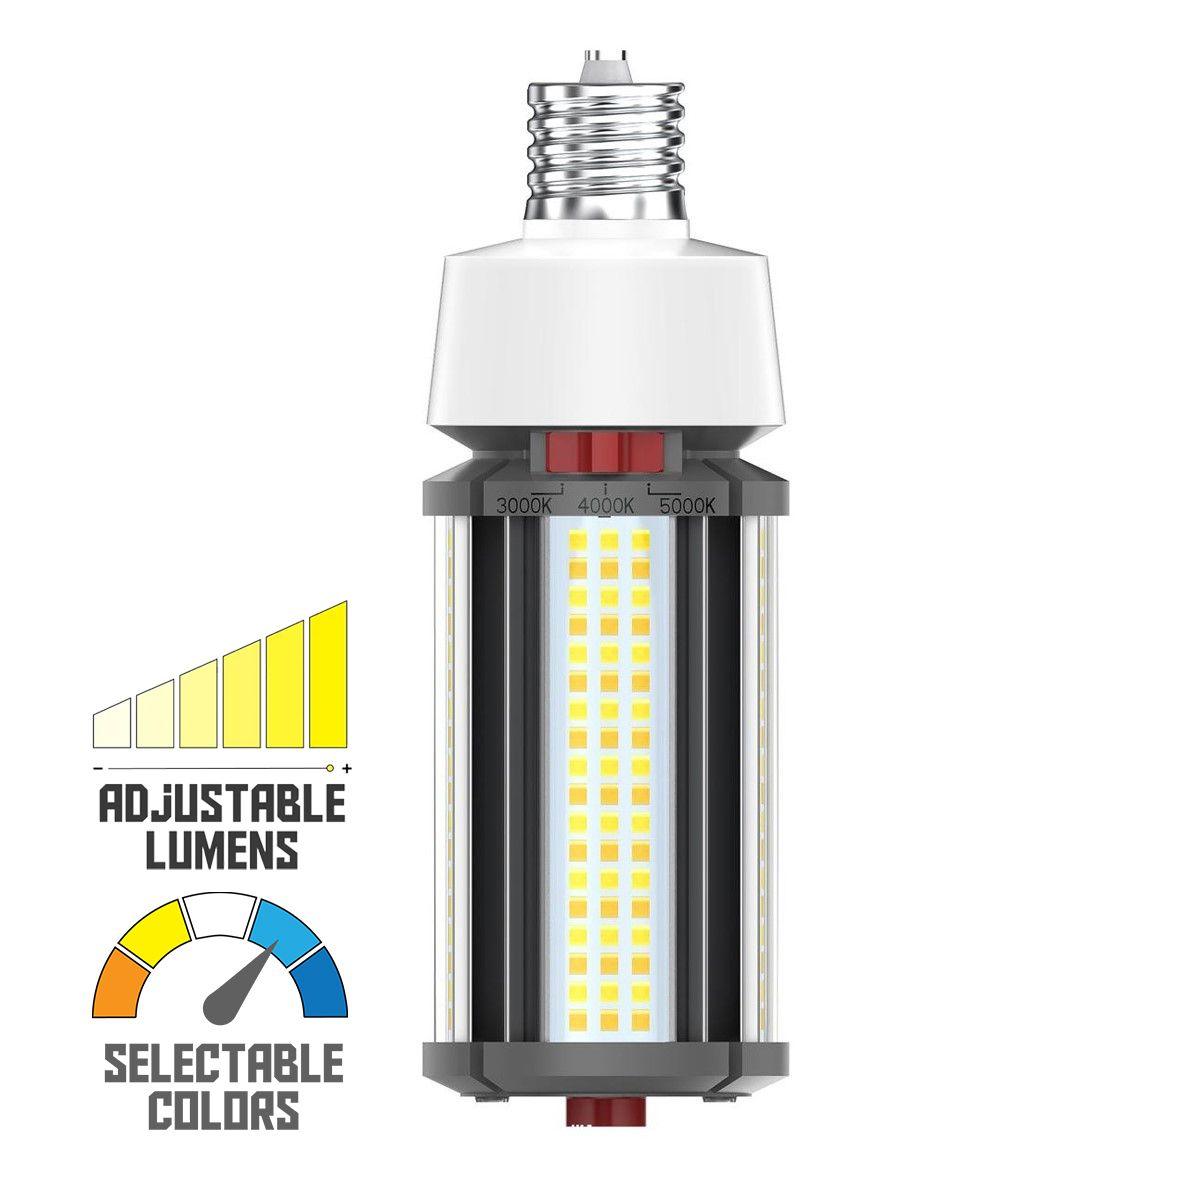 Hi-Pro Retrofit LED Corn Bulb, 27W, 3780 Lumens, Selectable CCT, 30K/40K/50K, EX39 Mogul Extended Base, 120-277V - Bees Lighting